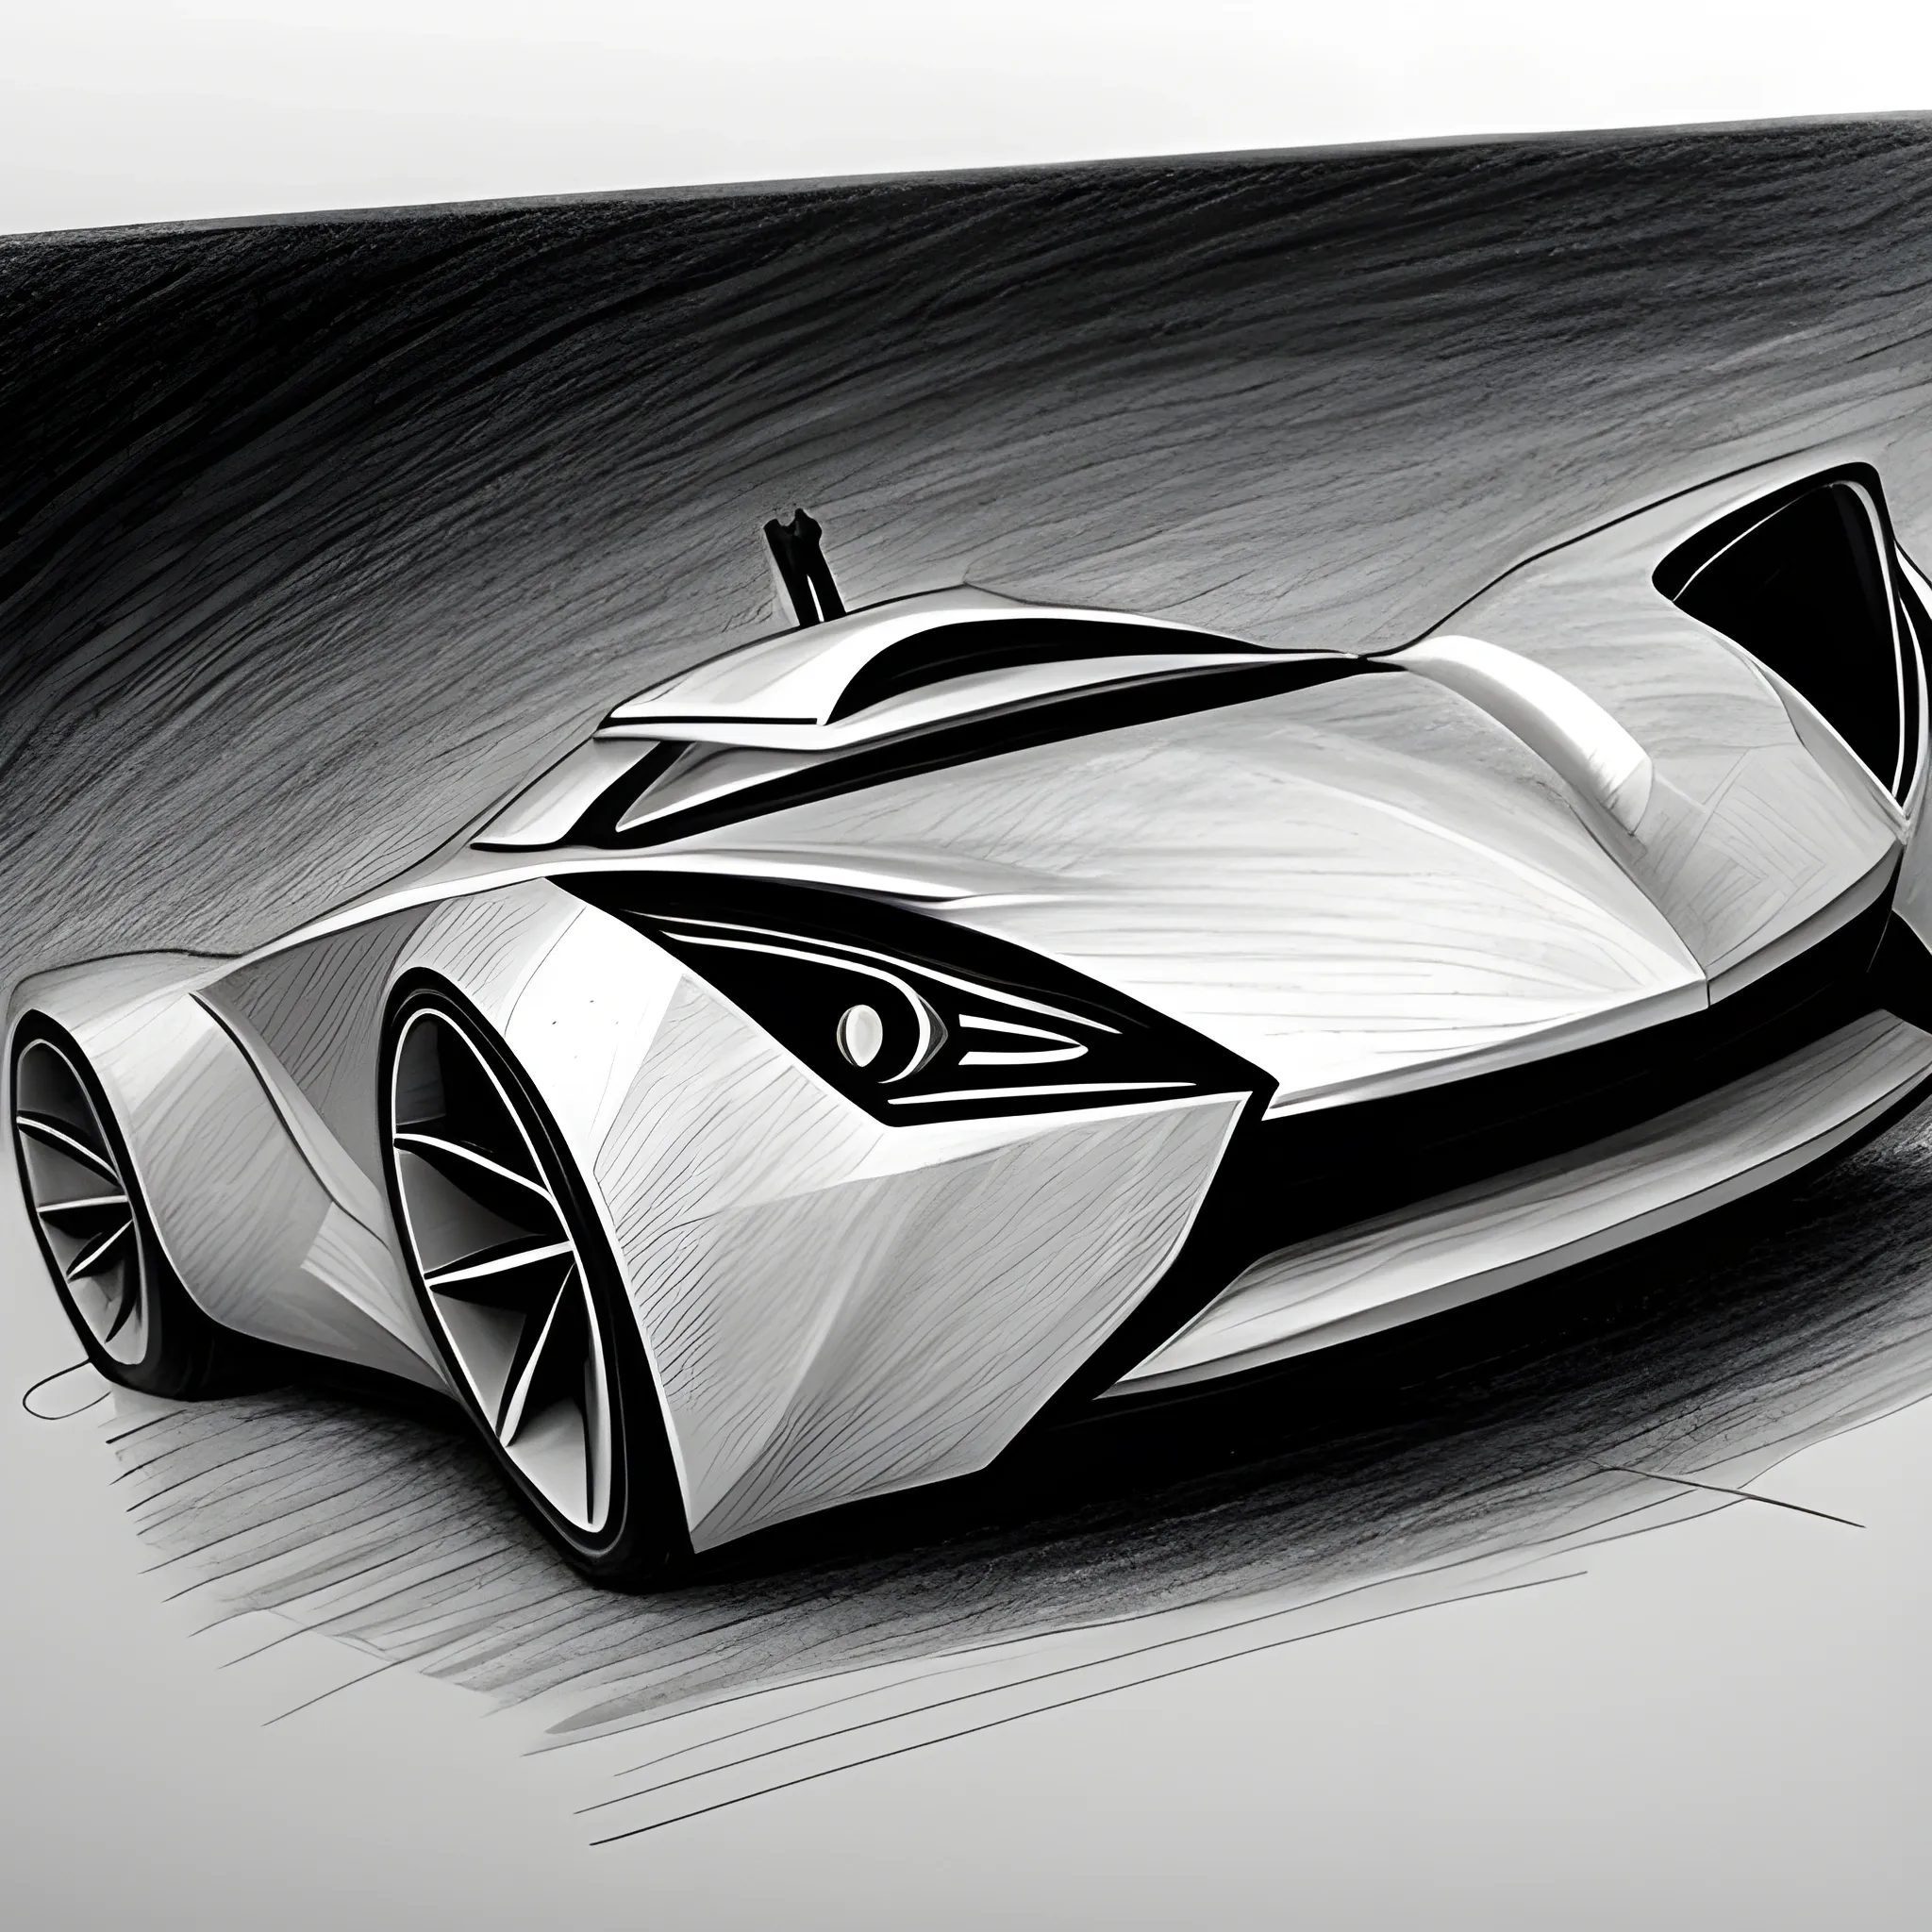 Top more than 70 futuristic car sketch - in.eteachers